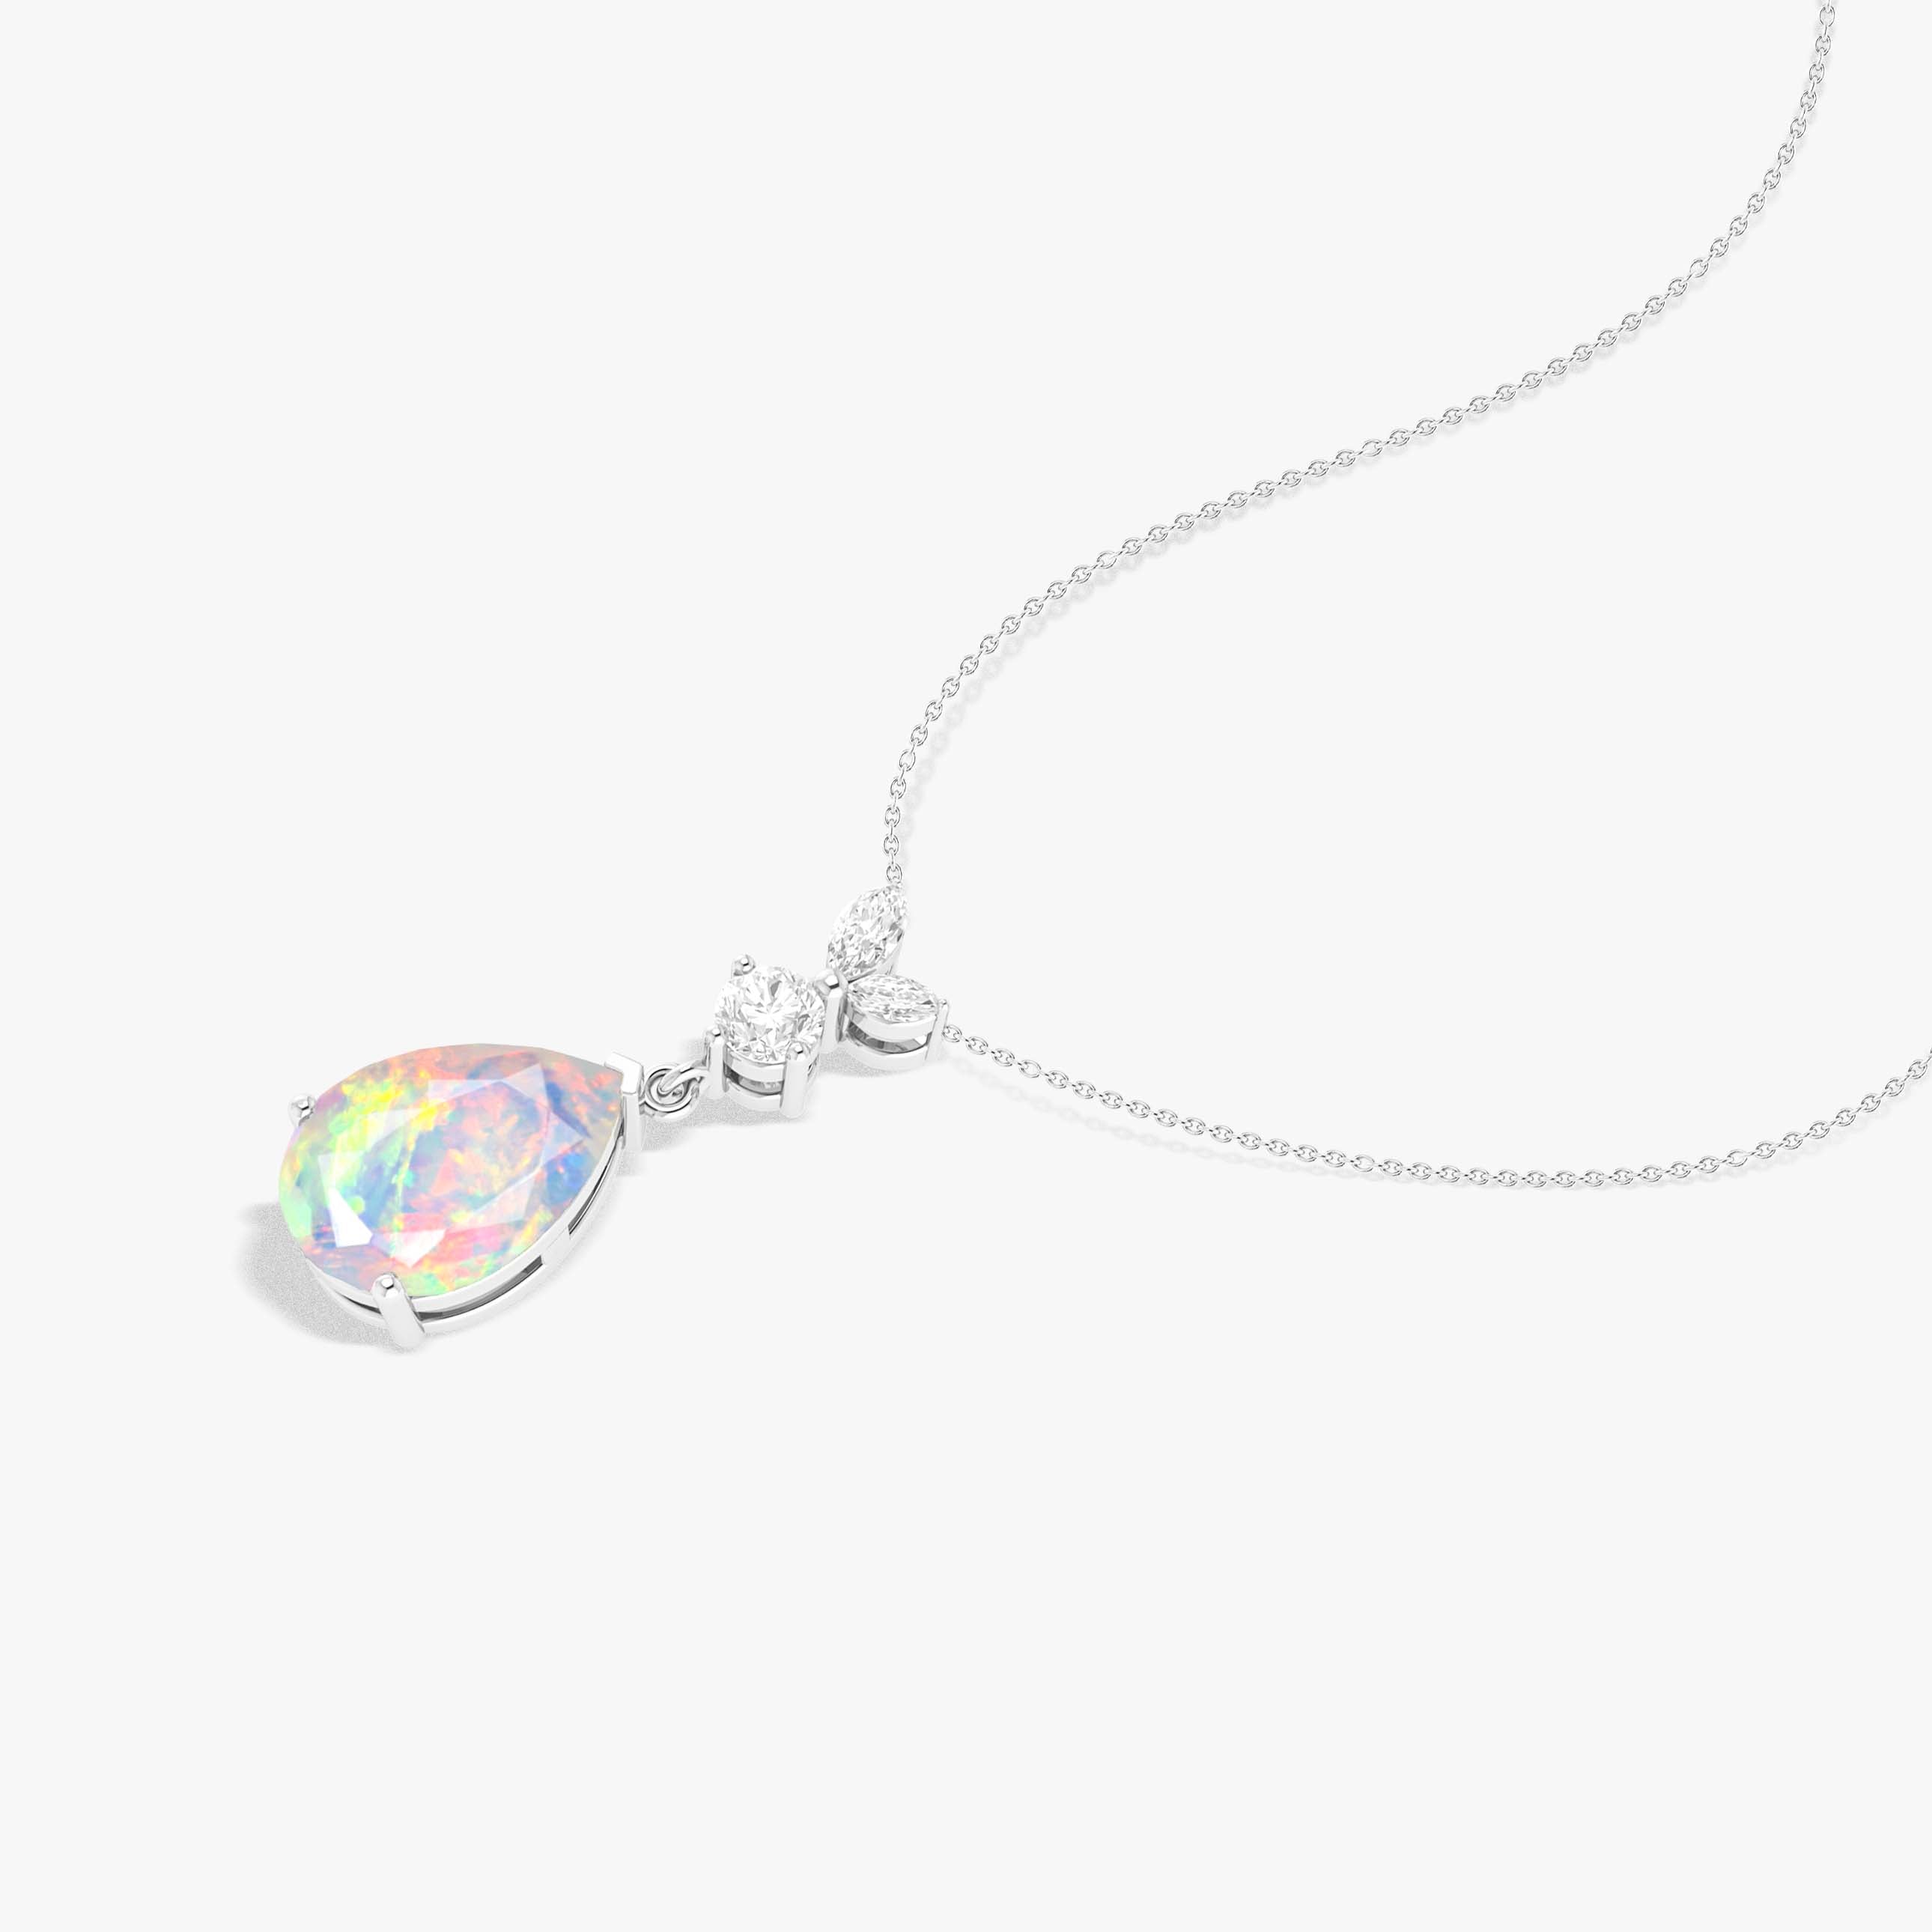 Fire Opal Pendant Necklace